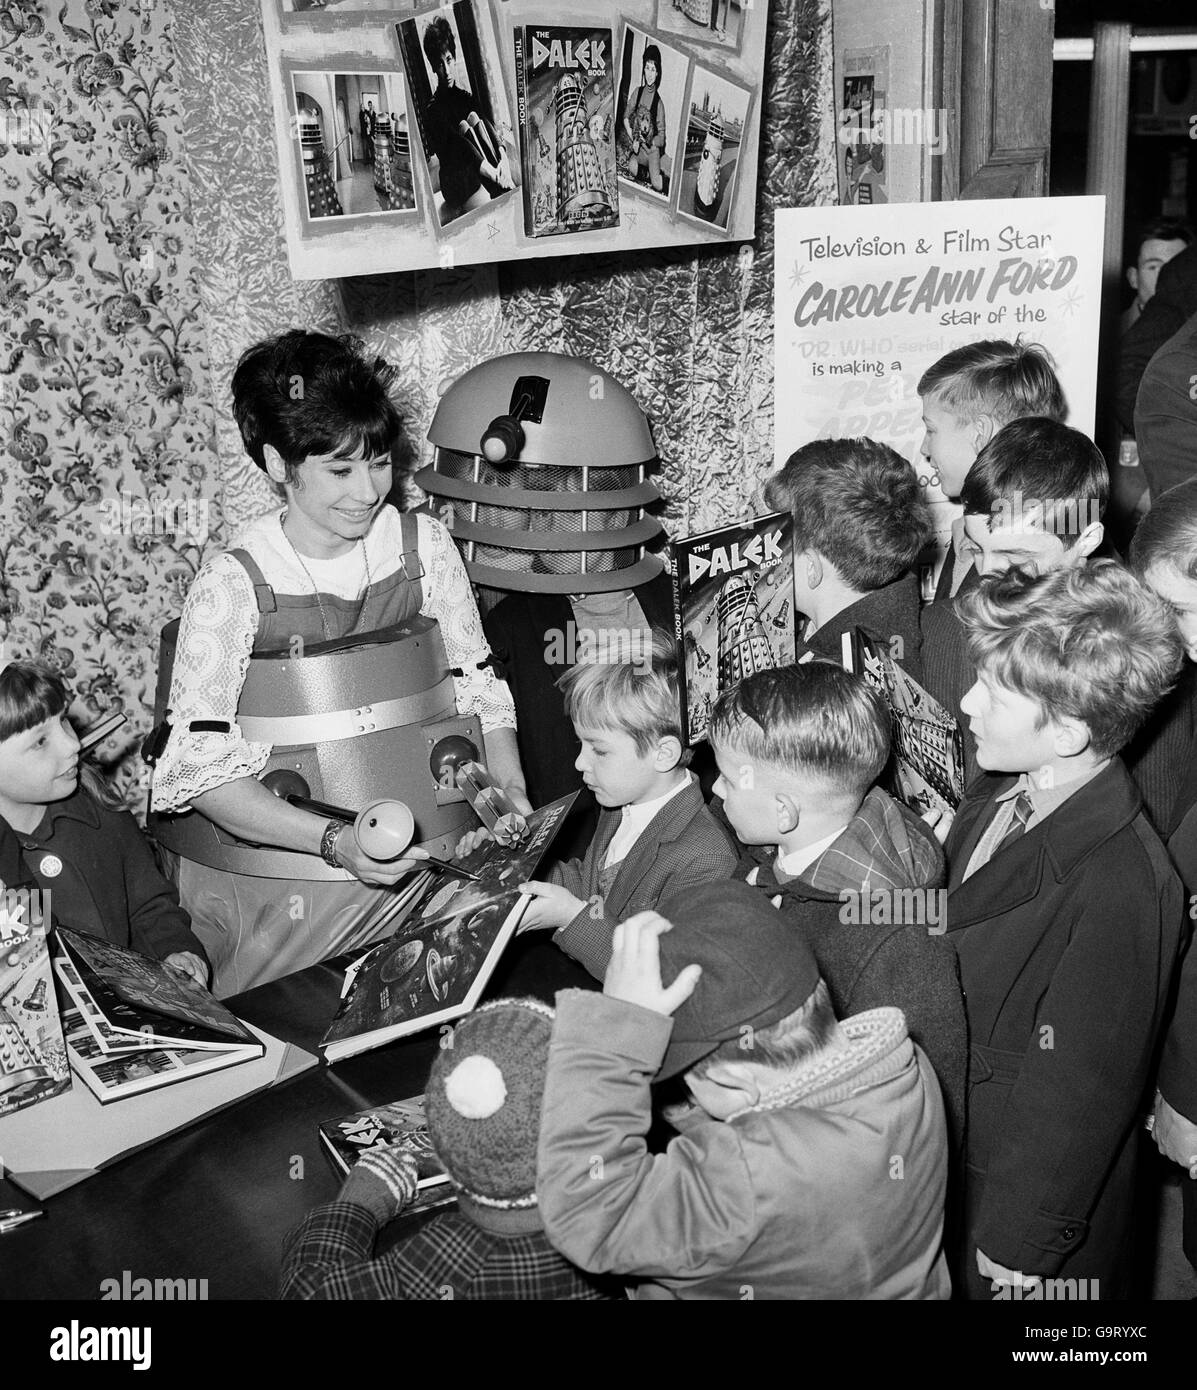 Carole Ann Ford, die Susan in Dr Who spielt, Autogramme für einige Kinder im Geschäft von Gamage in Holborn. Sie zeigt auch ein kindbetriebenes Dalek-Spielzeug. Stockfoto